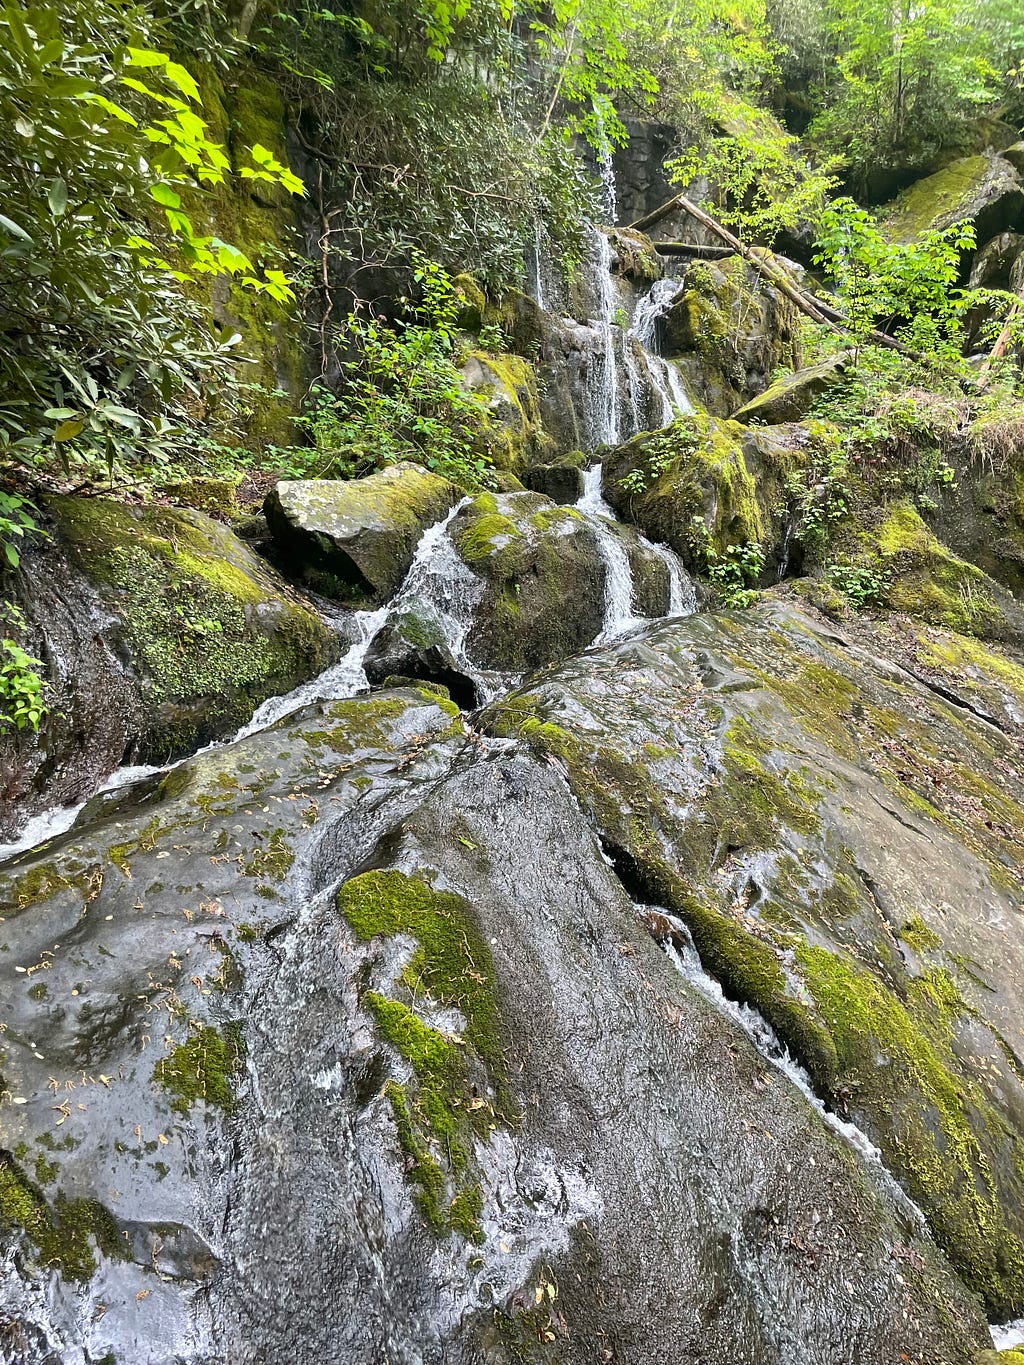 A stream runs through boulders.